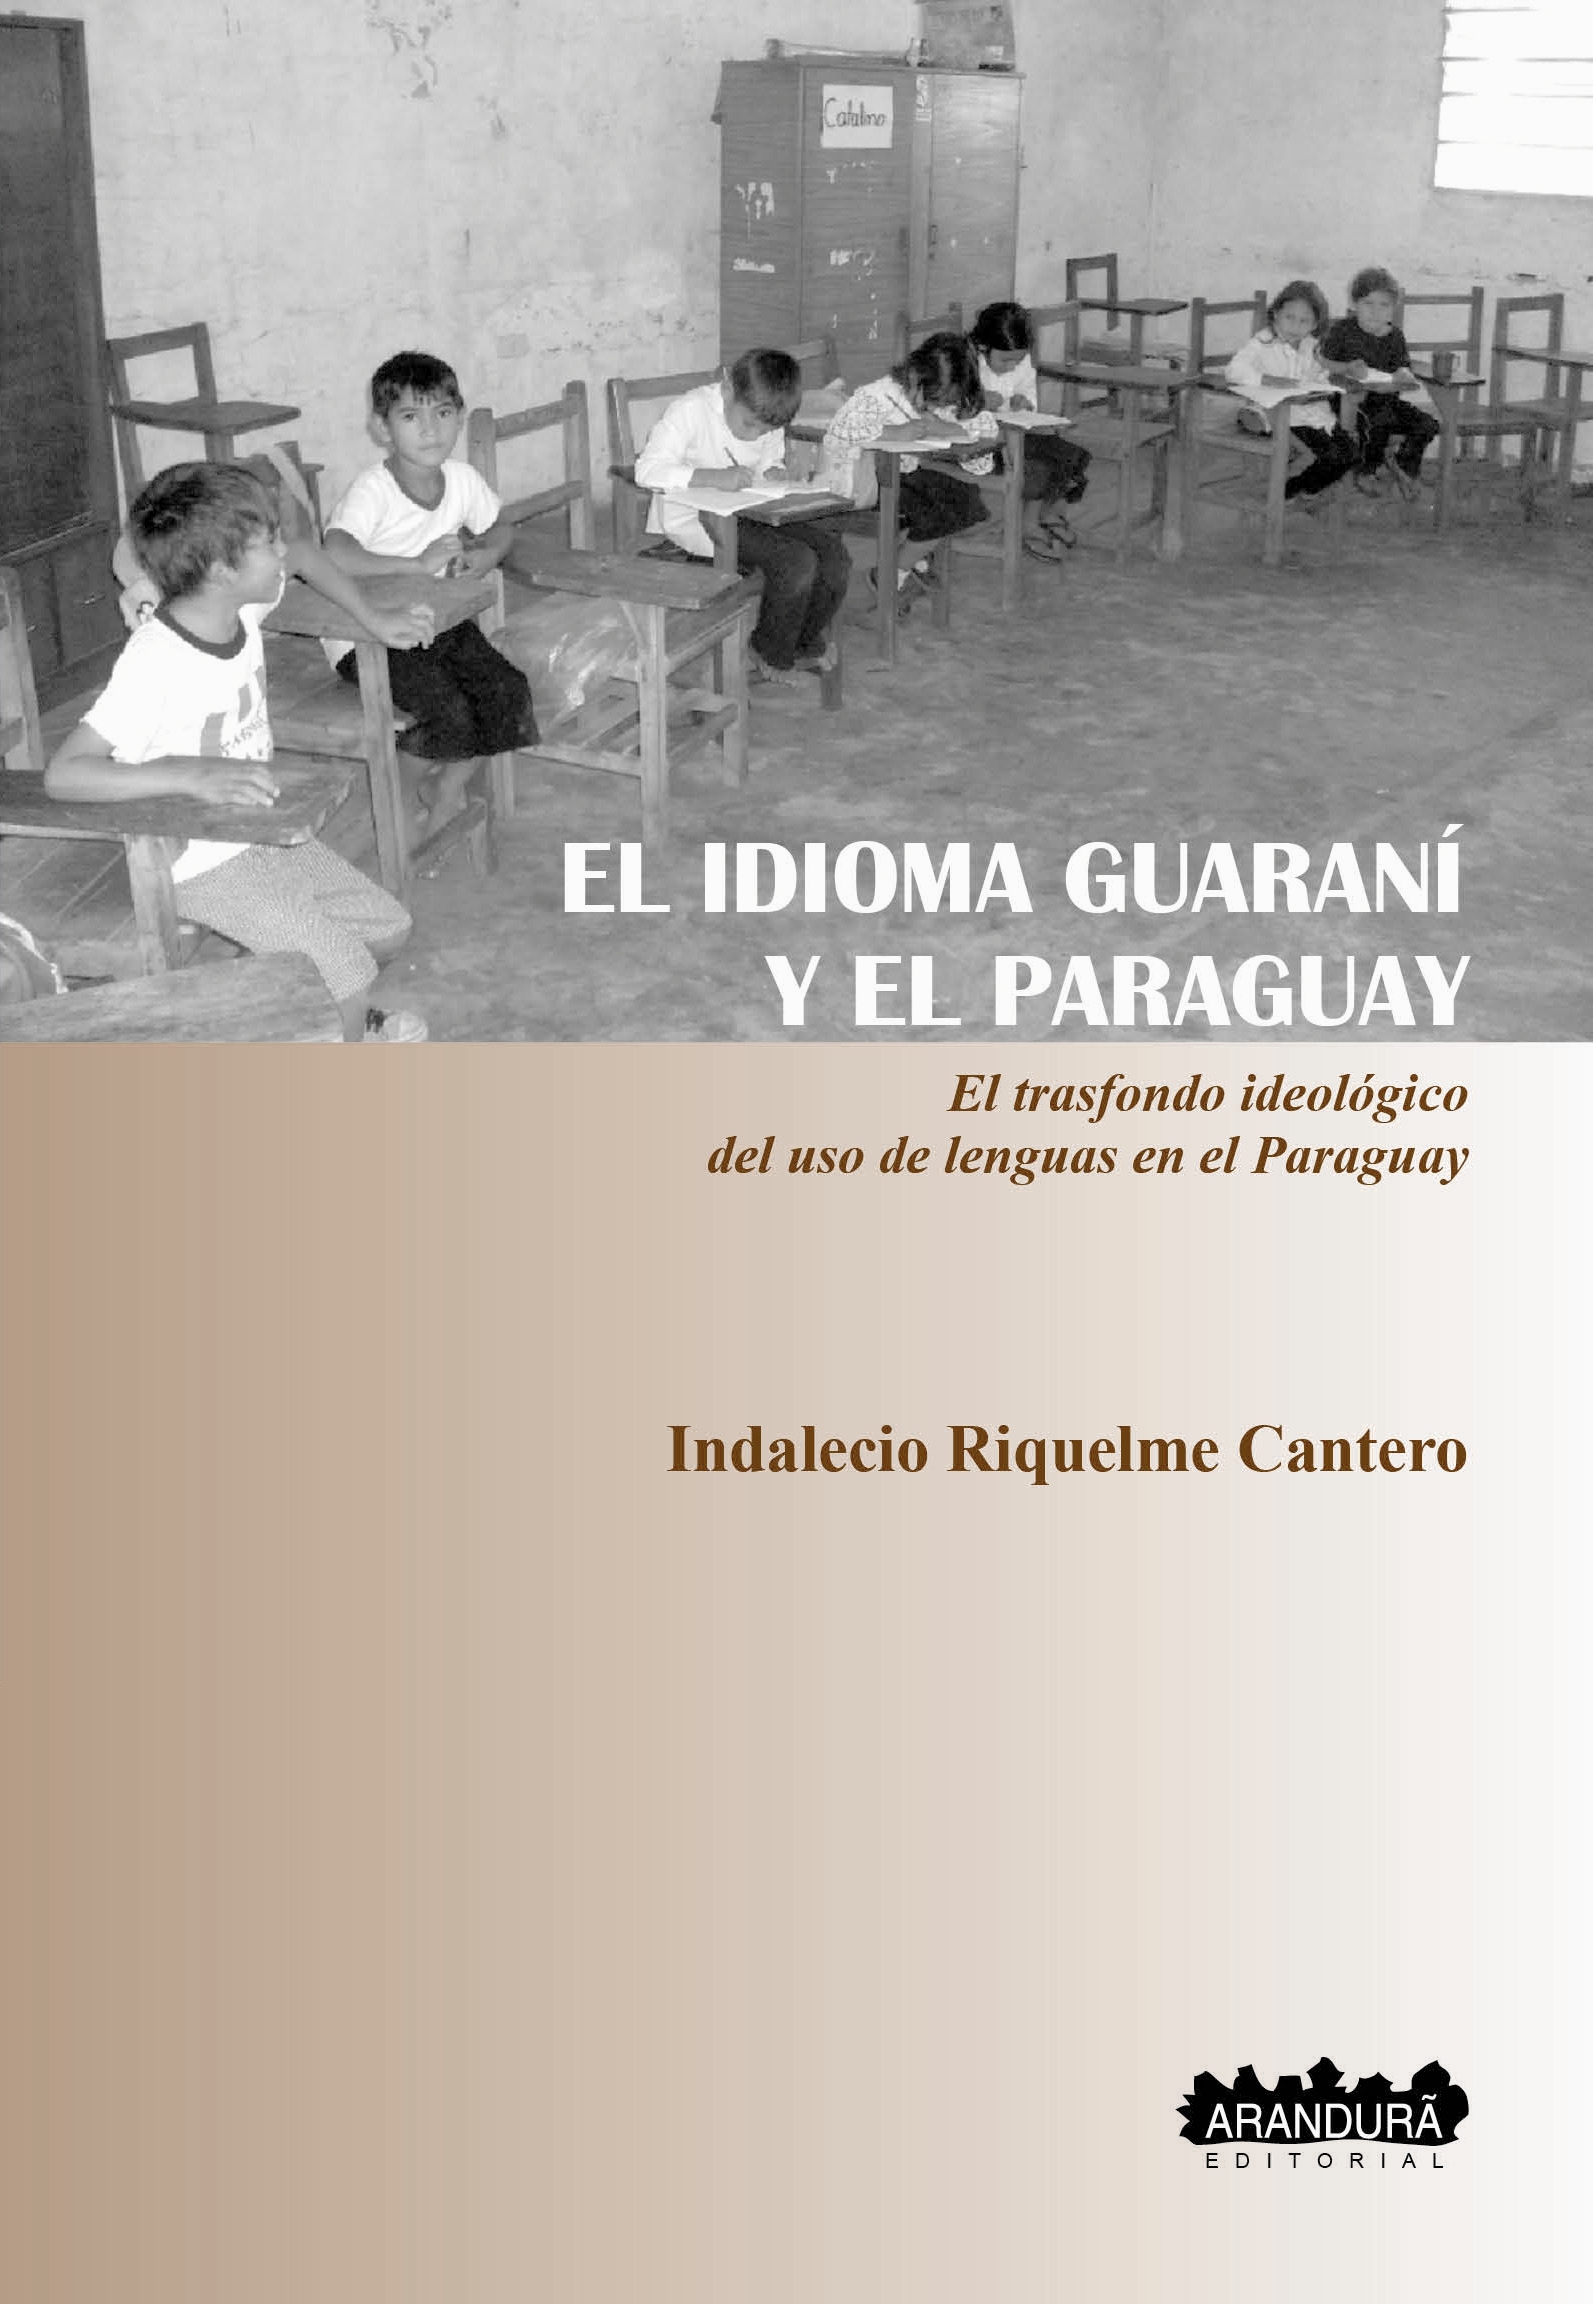 El idioma guaraní y el Paraguay, en un libro que se lanza hoy en la Biblioteca Nacional imagen